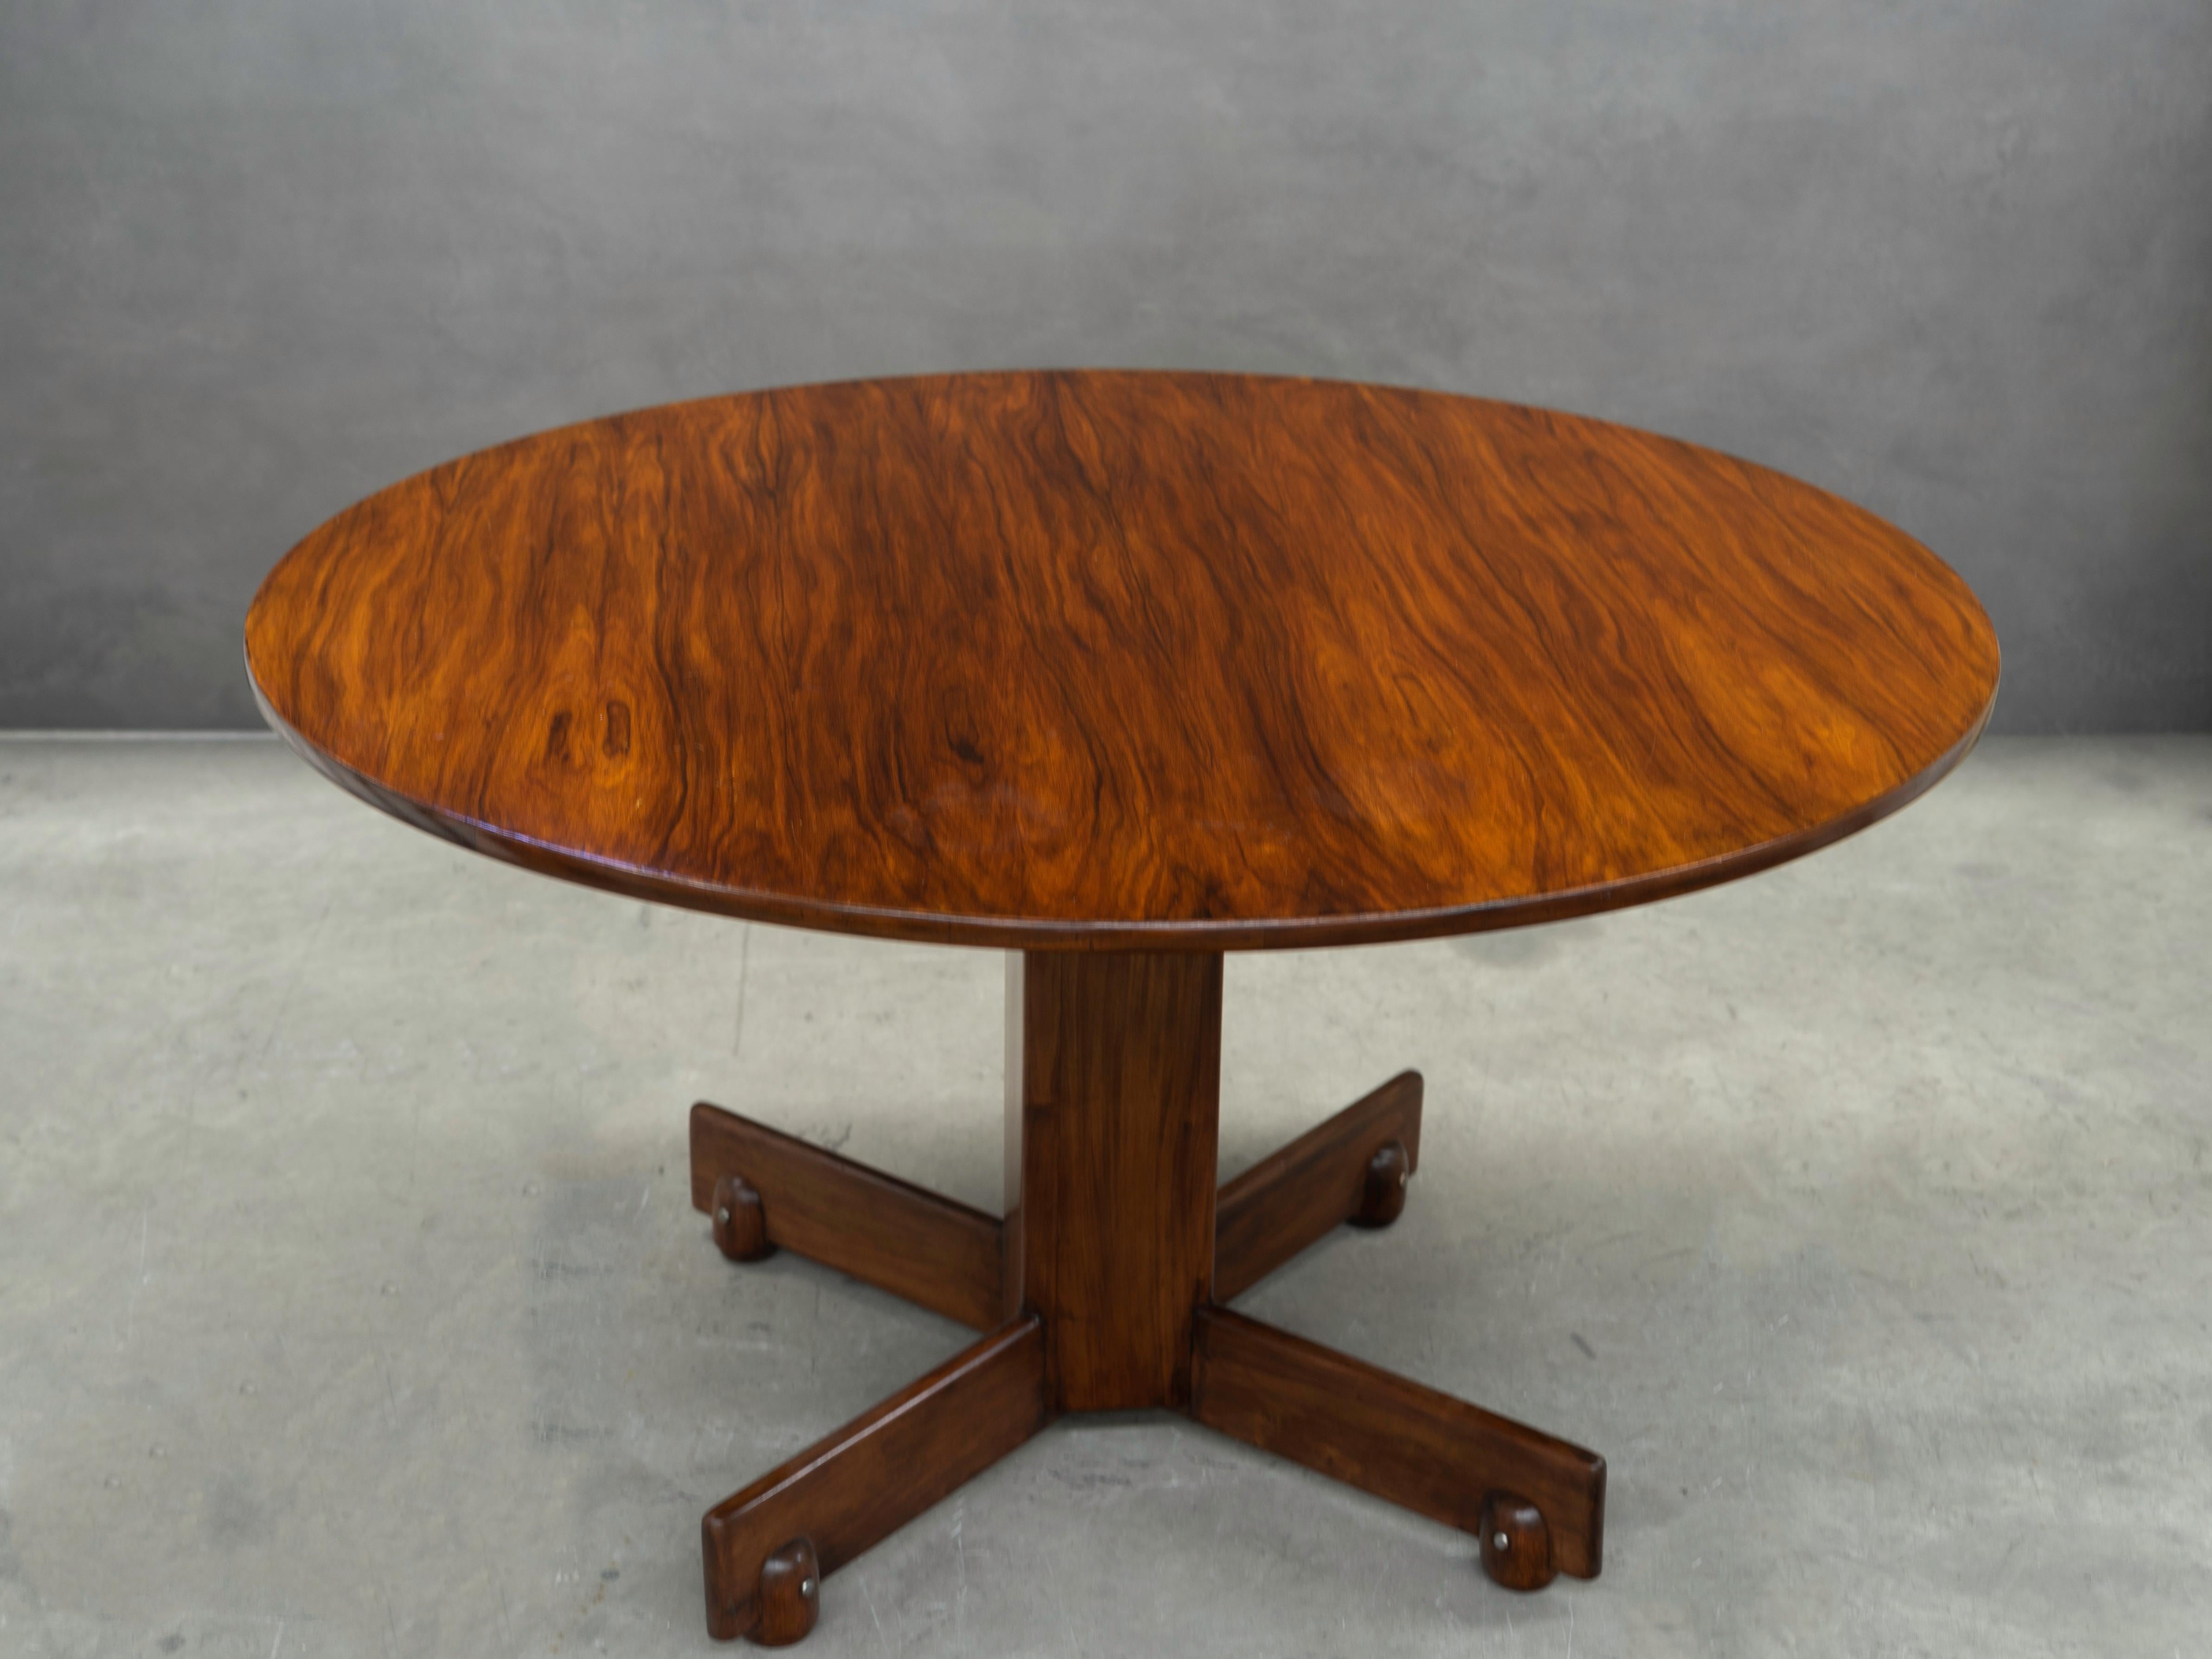 Conçue en 1960 par Sergio Rodrigues, cette table à manger moderne est fabriquée en bois de rose (Jacaranda).

Créée par Sergio Rodrigues en 1960, la table ronde, nommée 